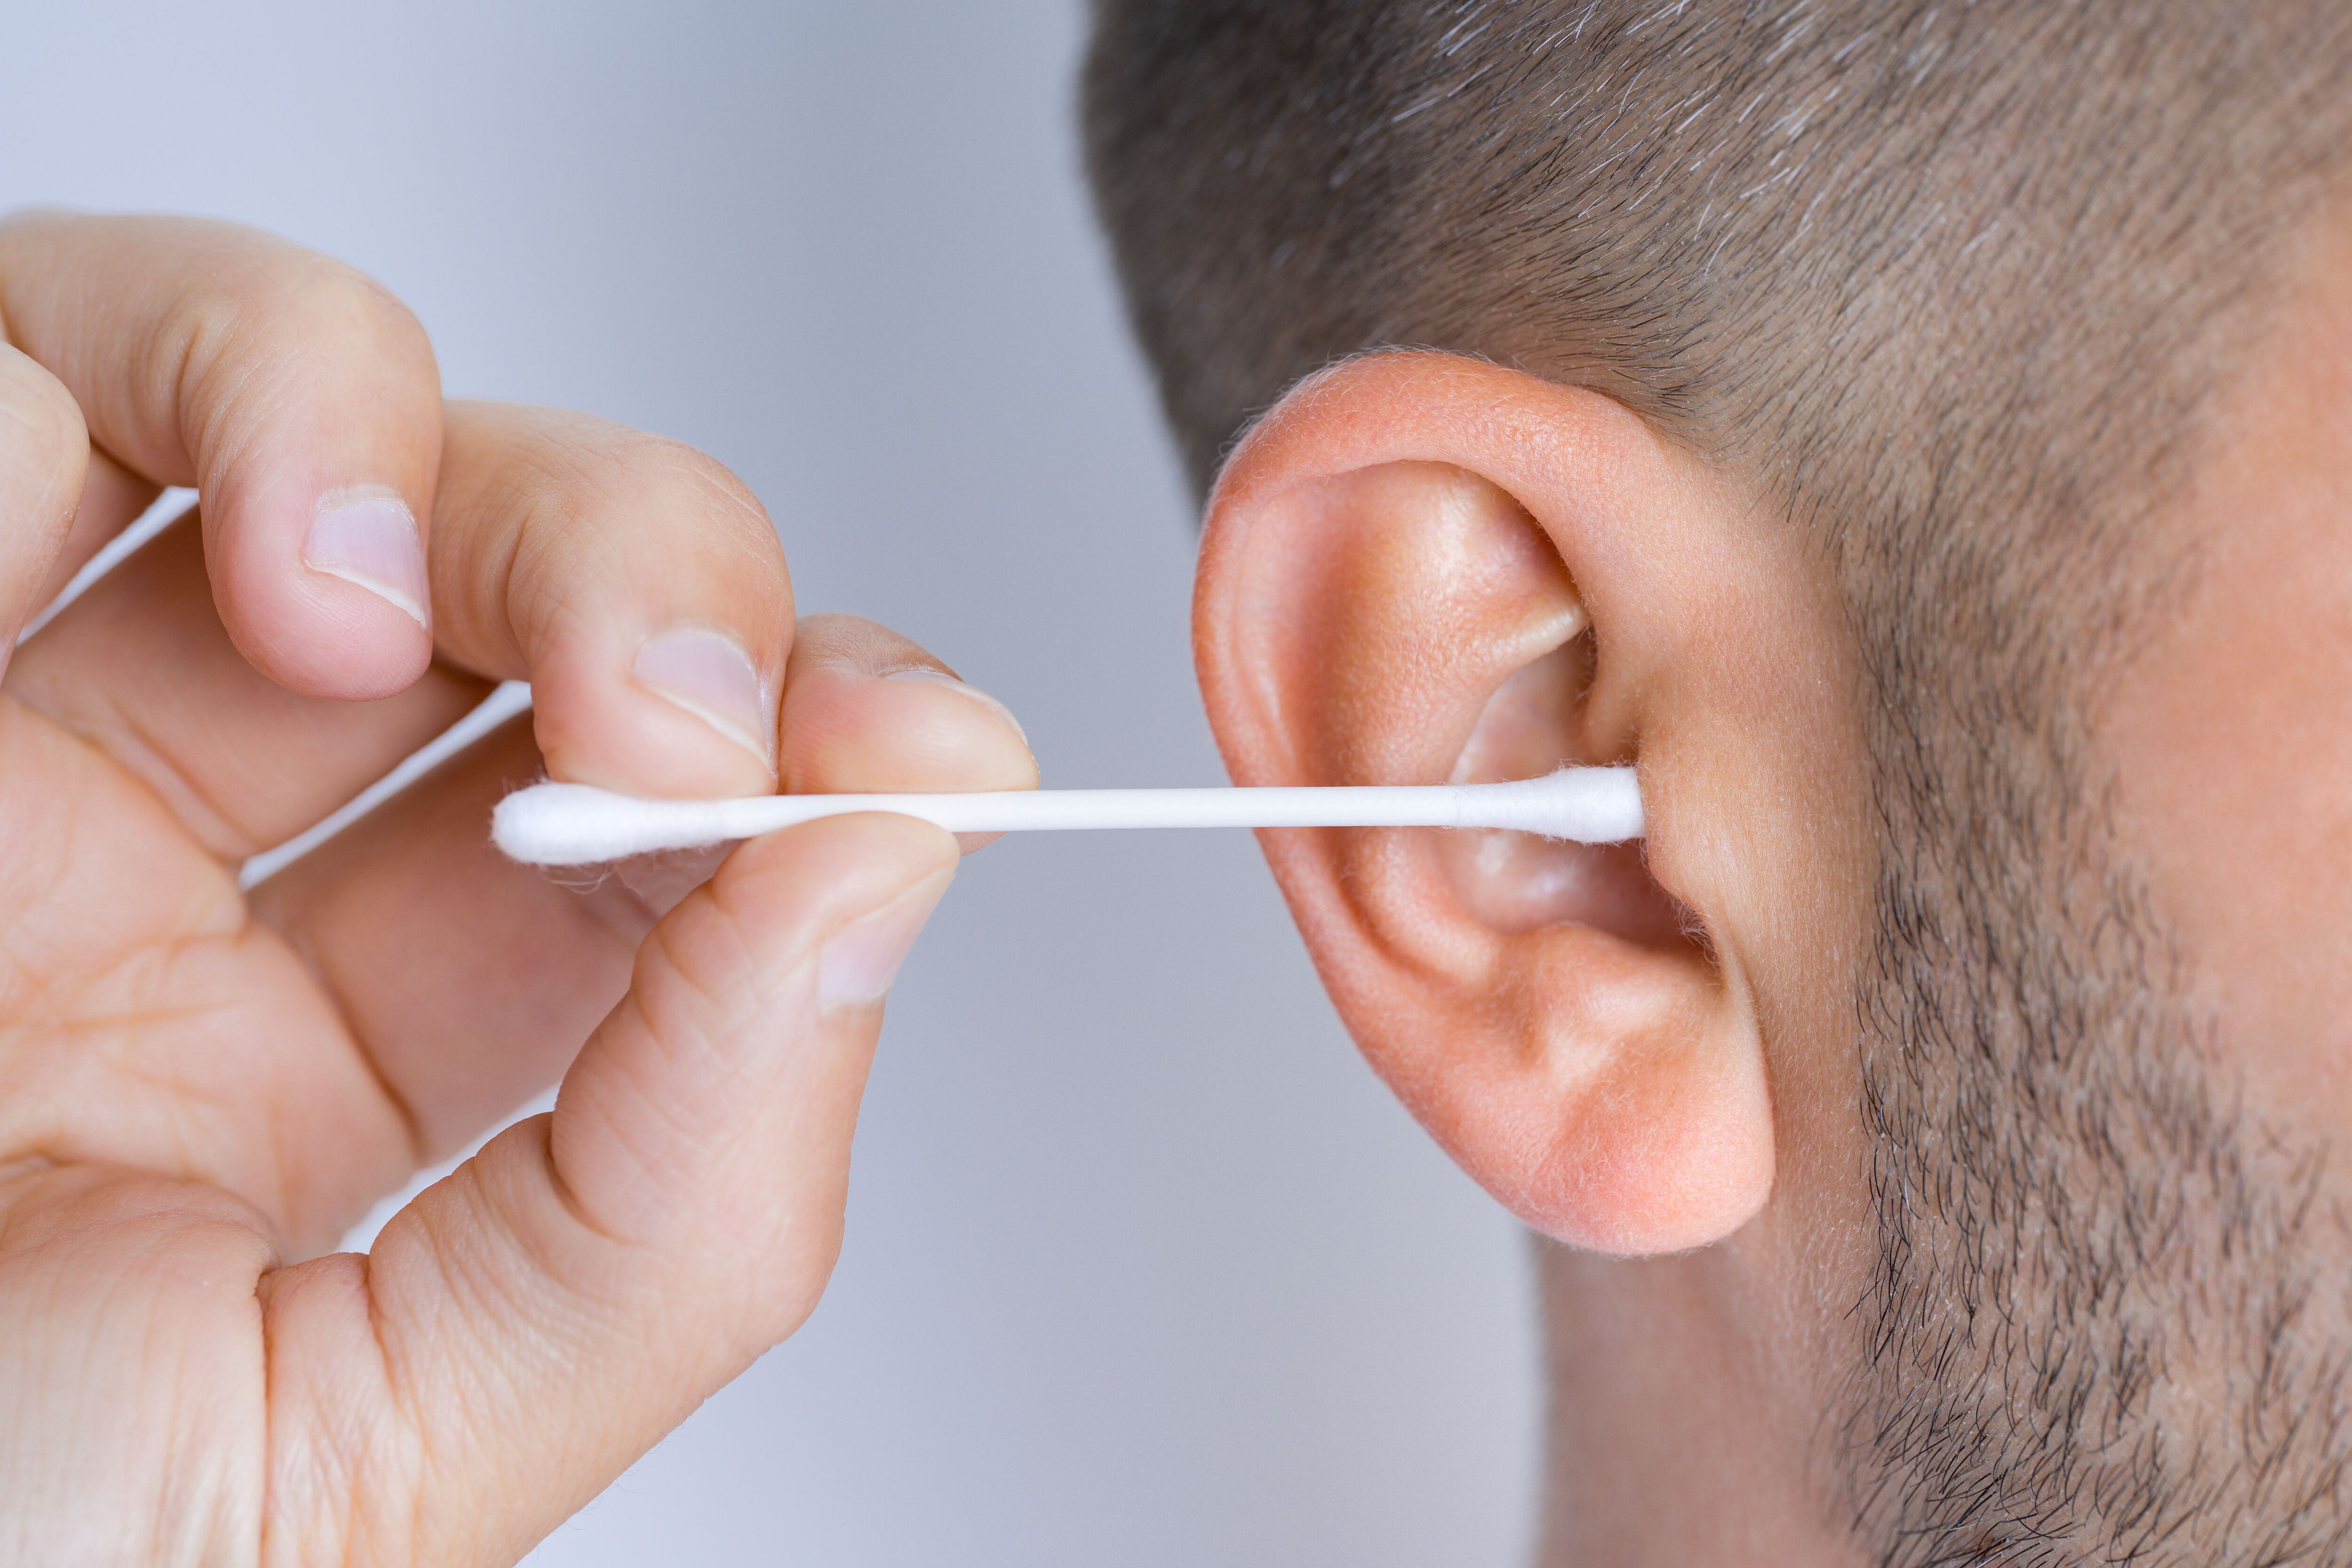 Por qué no se recomiendan los bastoncillos para limpiar la cera de los oídos  del bebé